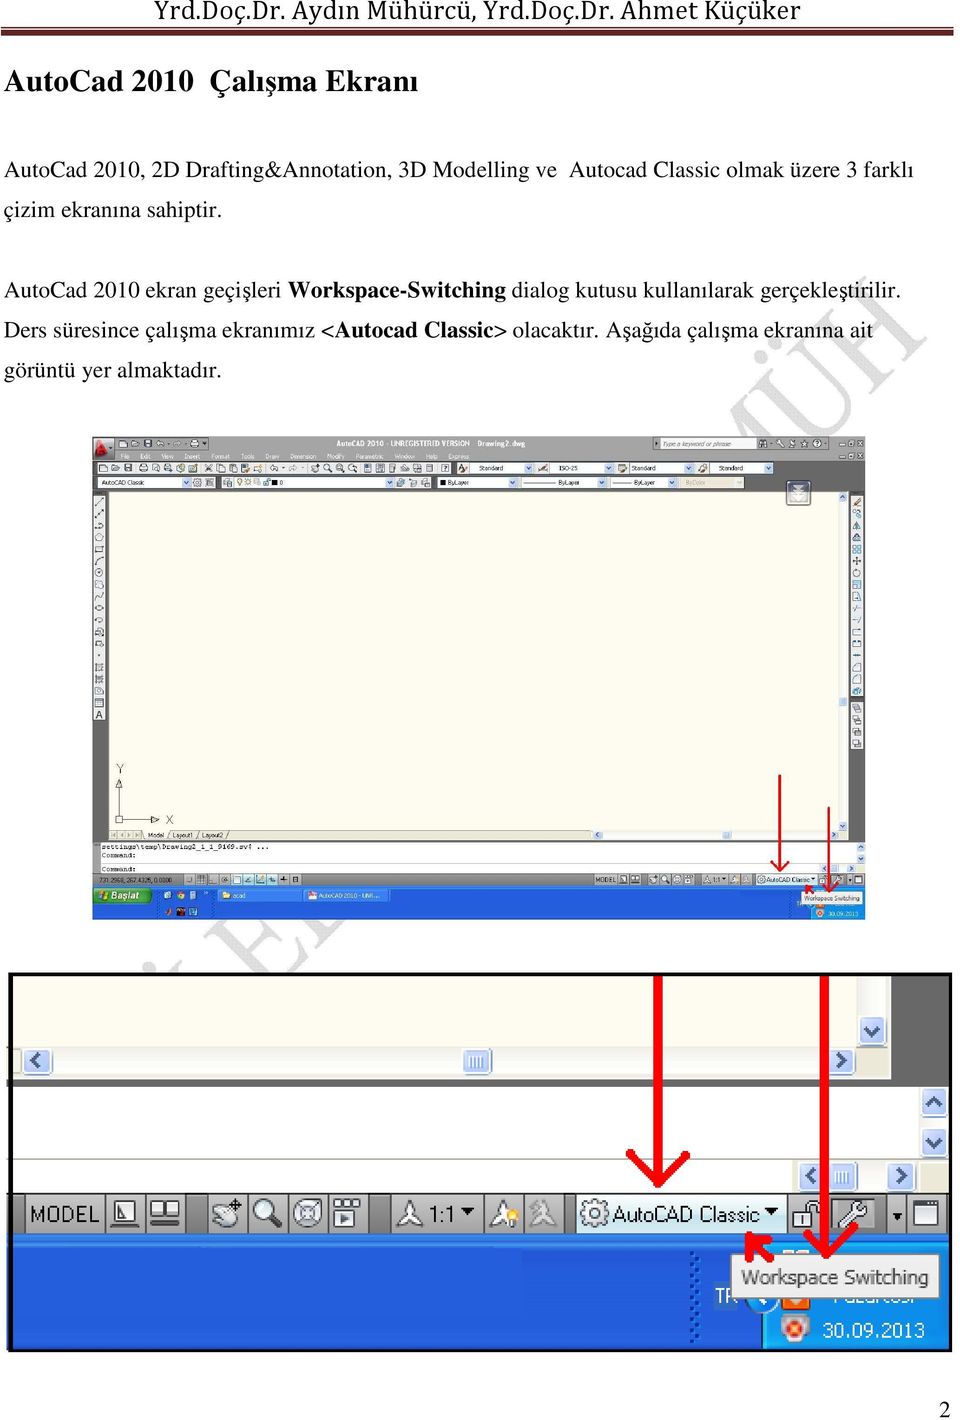 AutoCad 2010 ekran geçişleri Workspace-Switching dialog kutusu kullanılarak